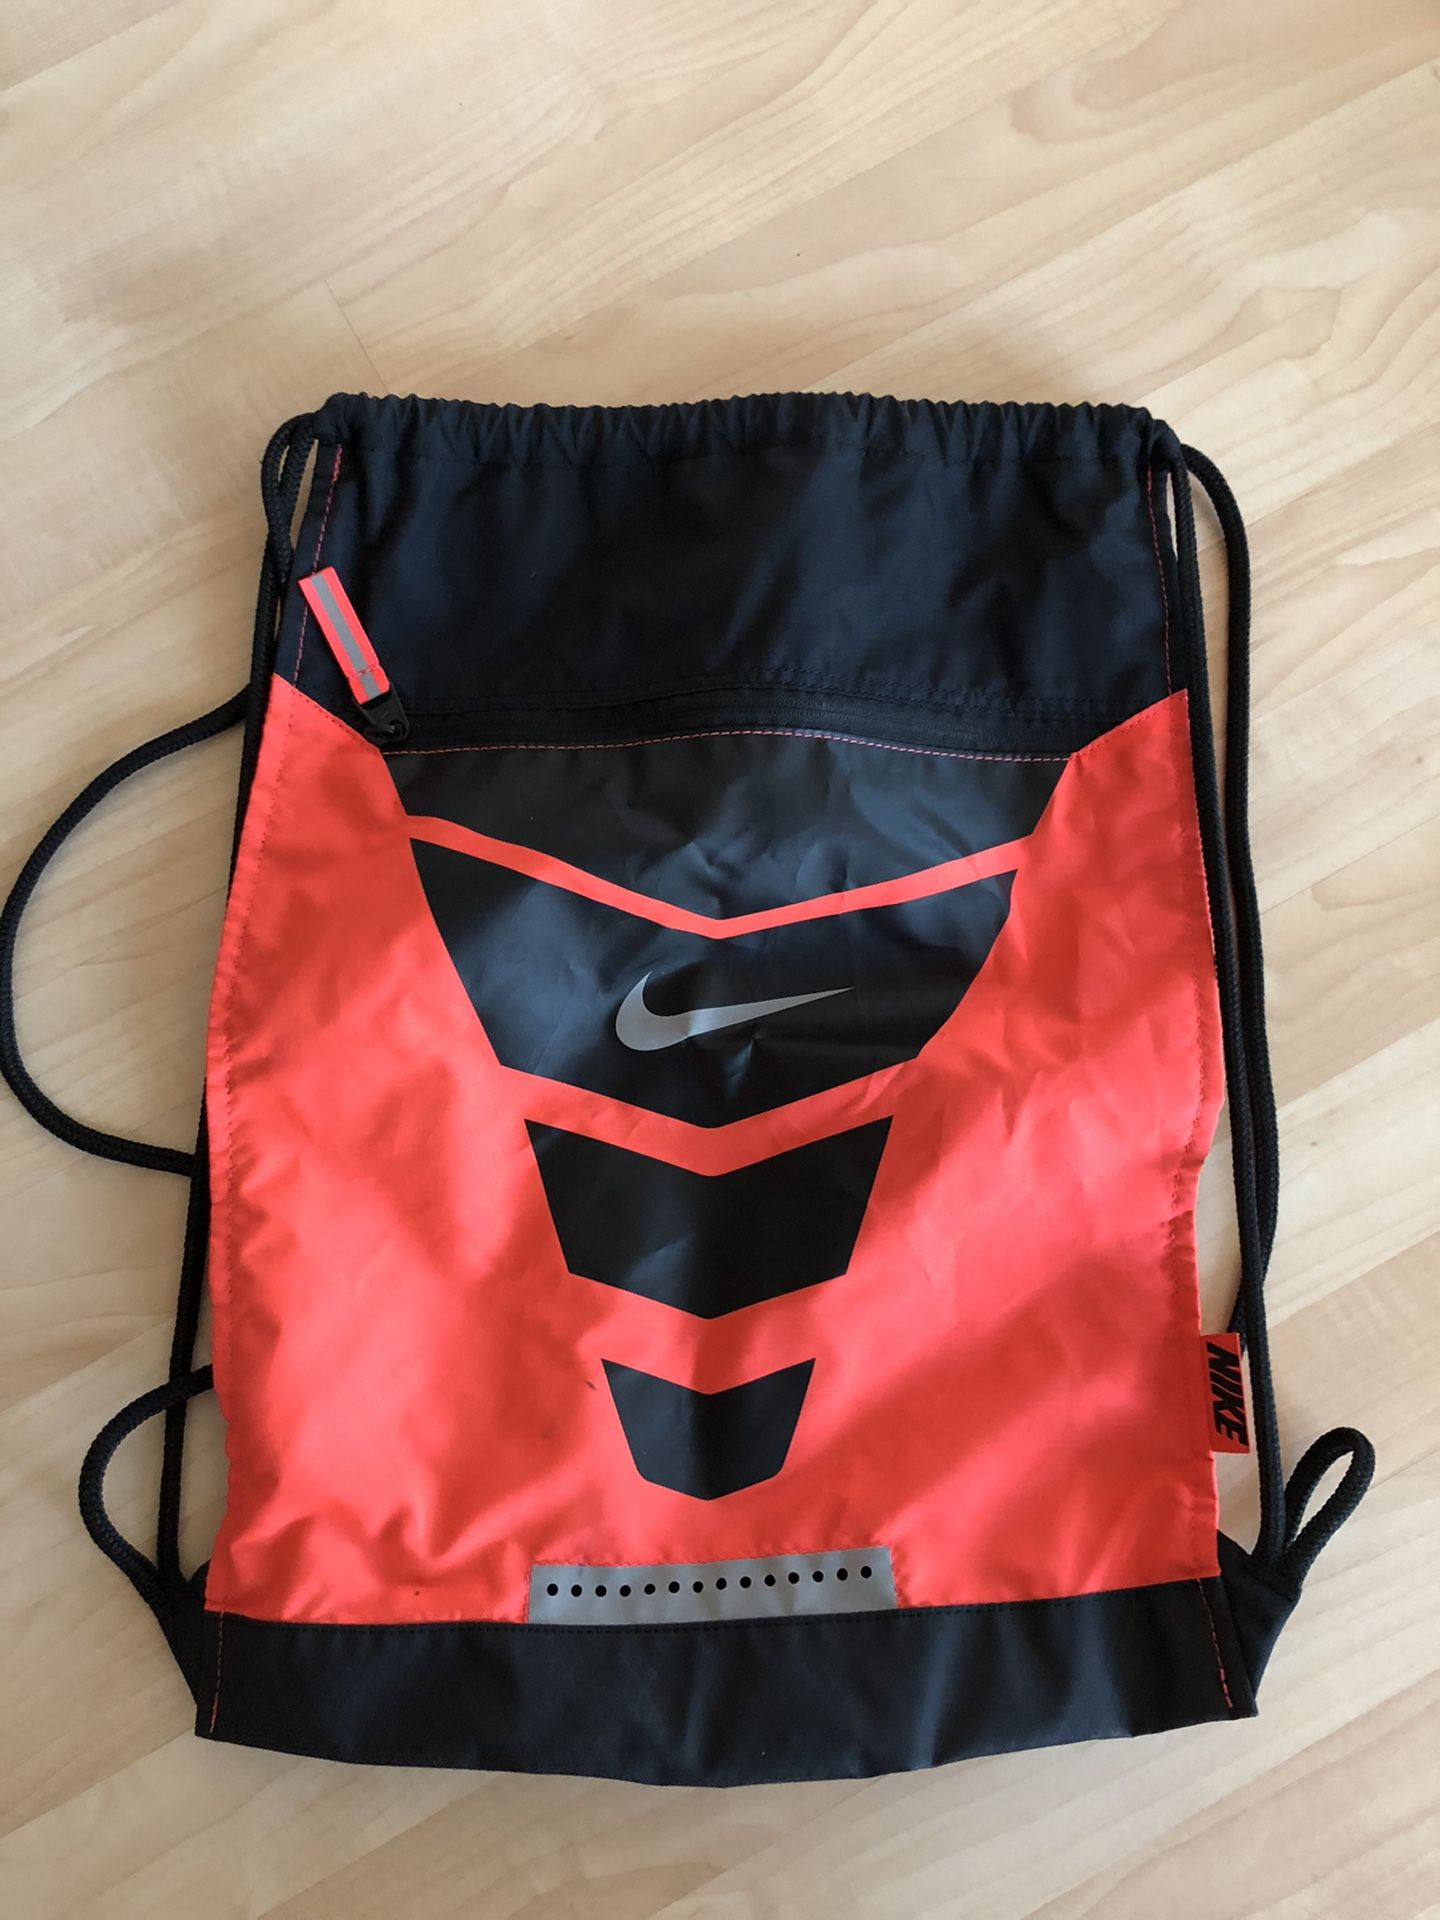 Nike backpack drawstring Like New